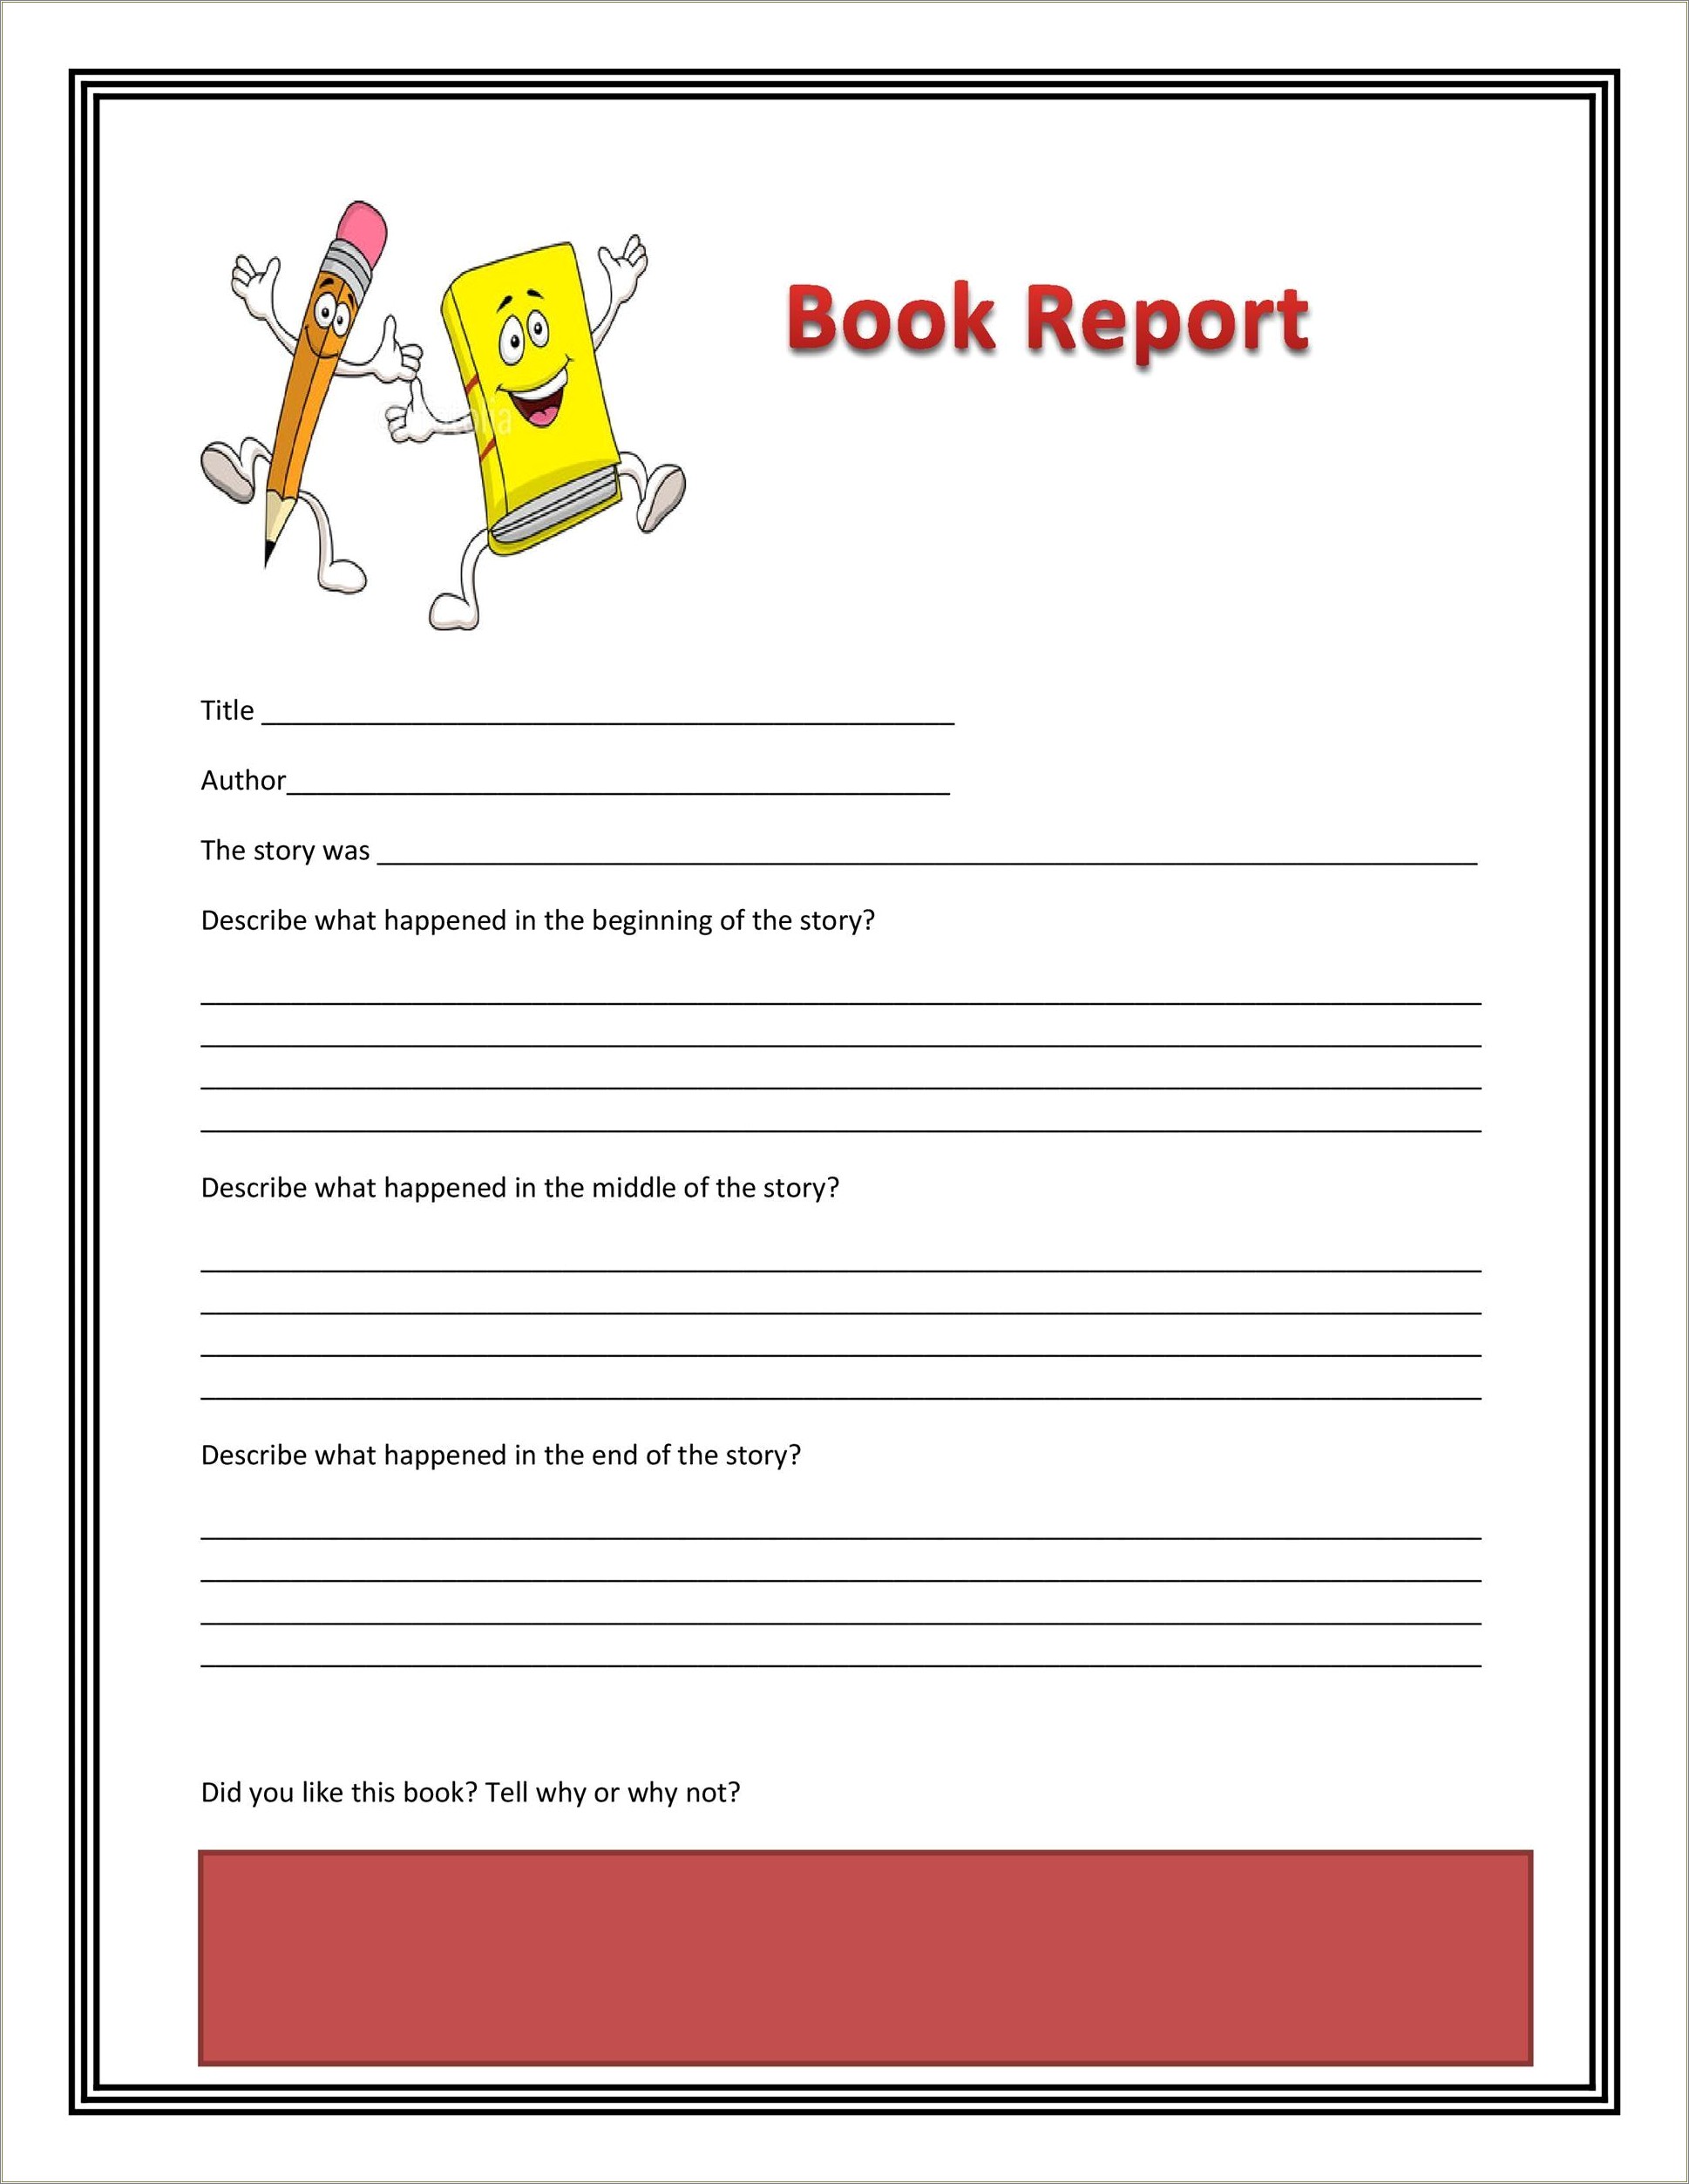 Book Report Free Template Fourth Grade Montessori School